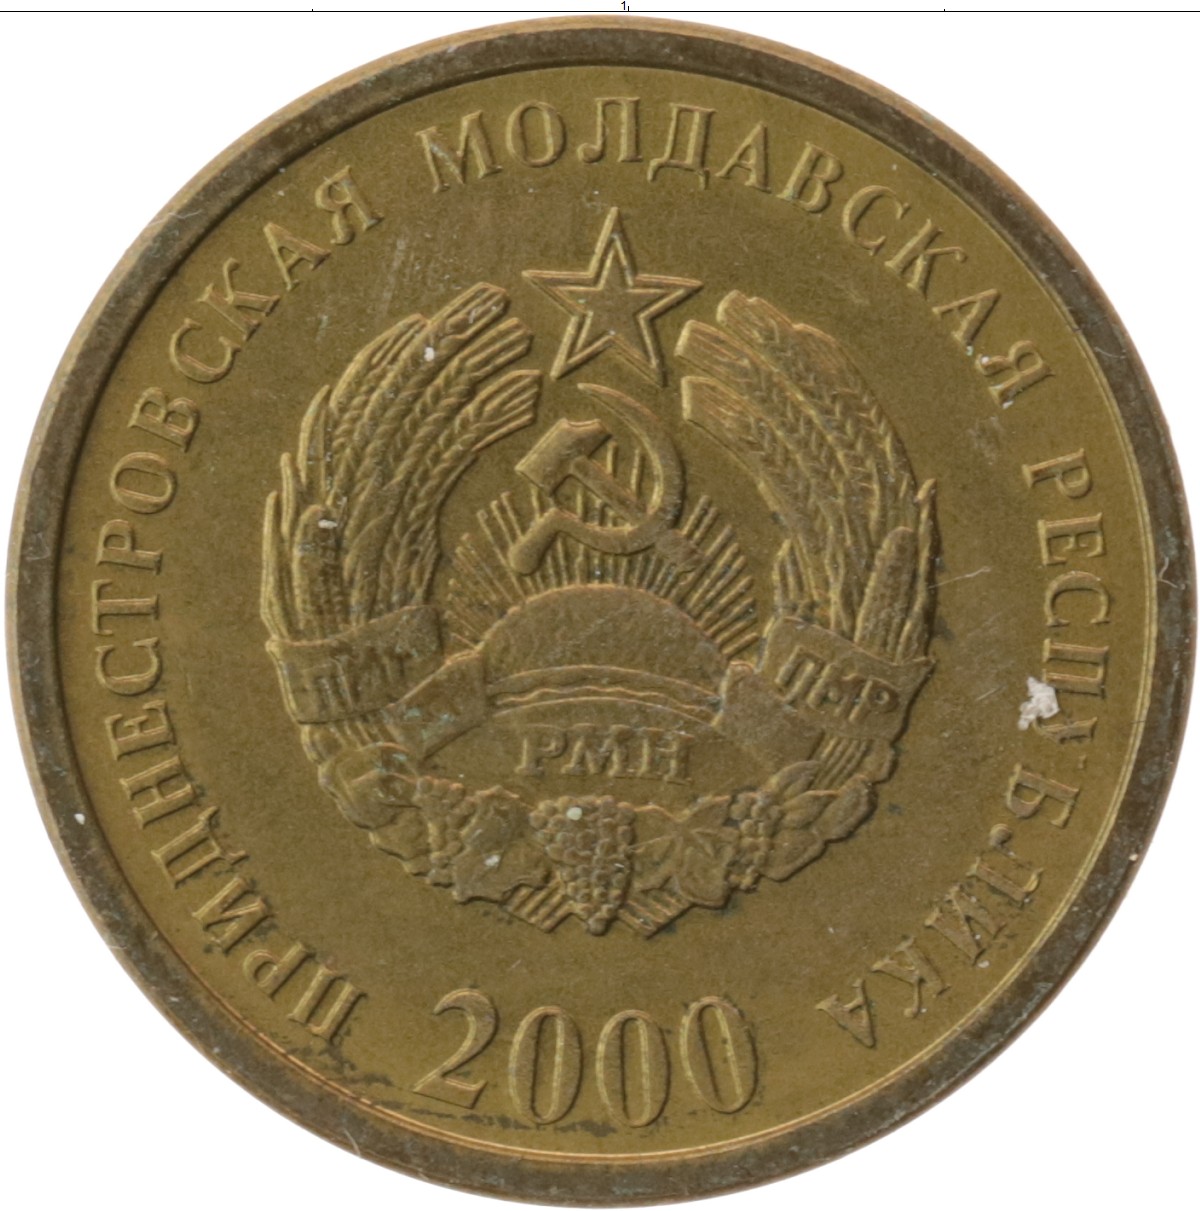 Оценка монет в москве бесплатно по фото без регистрации бесплатно